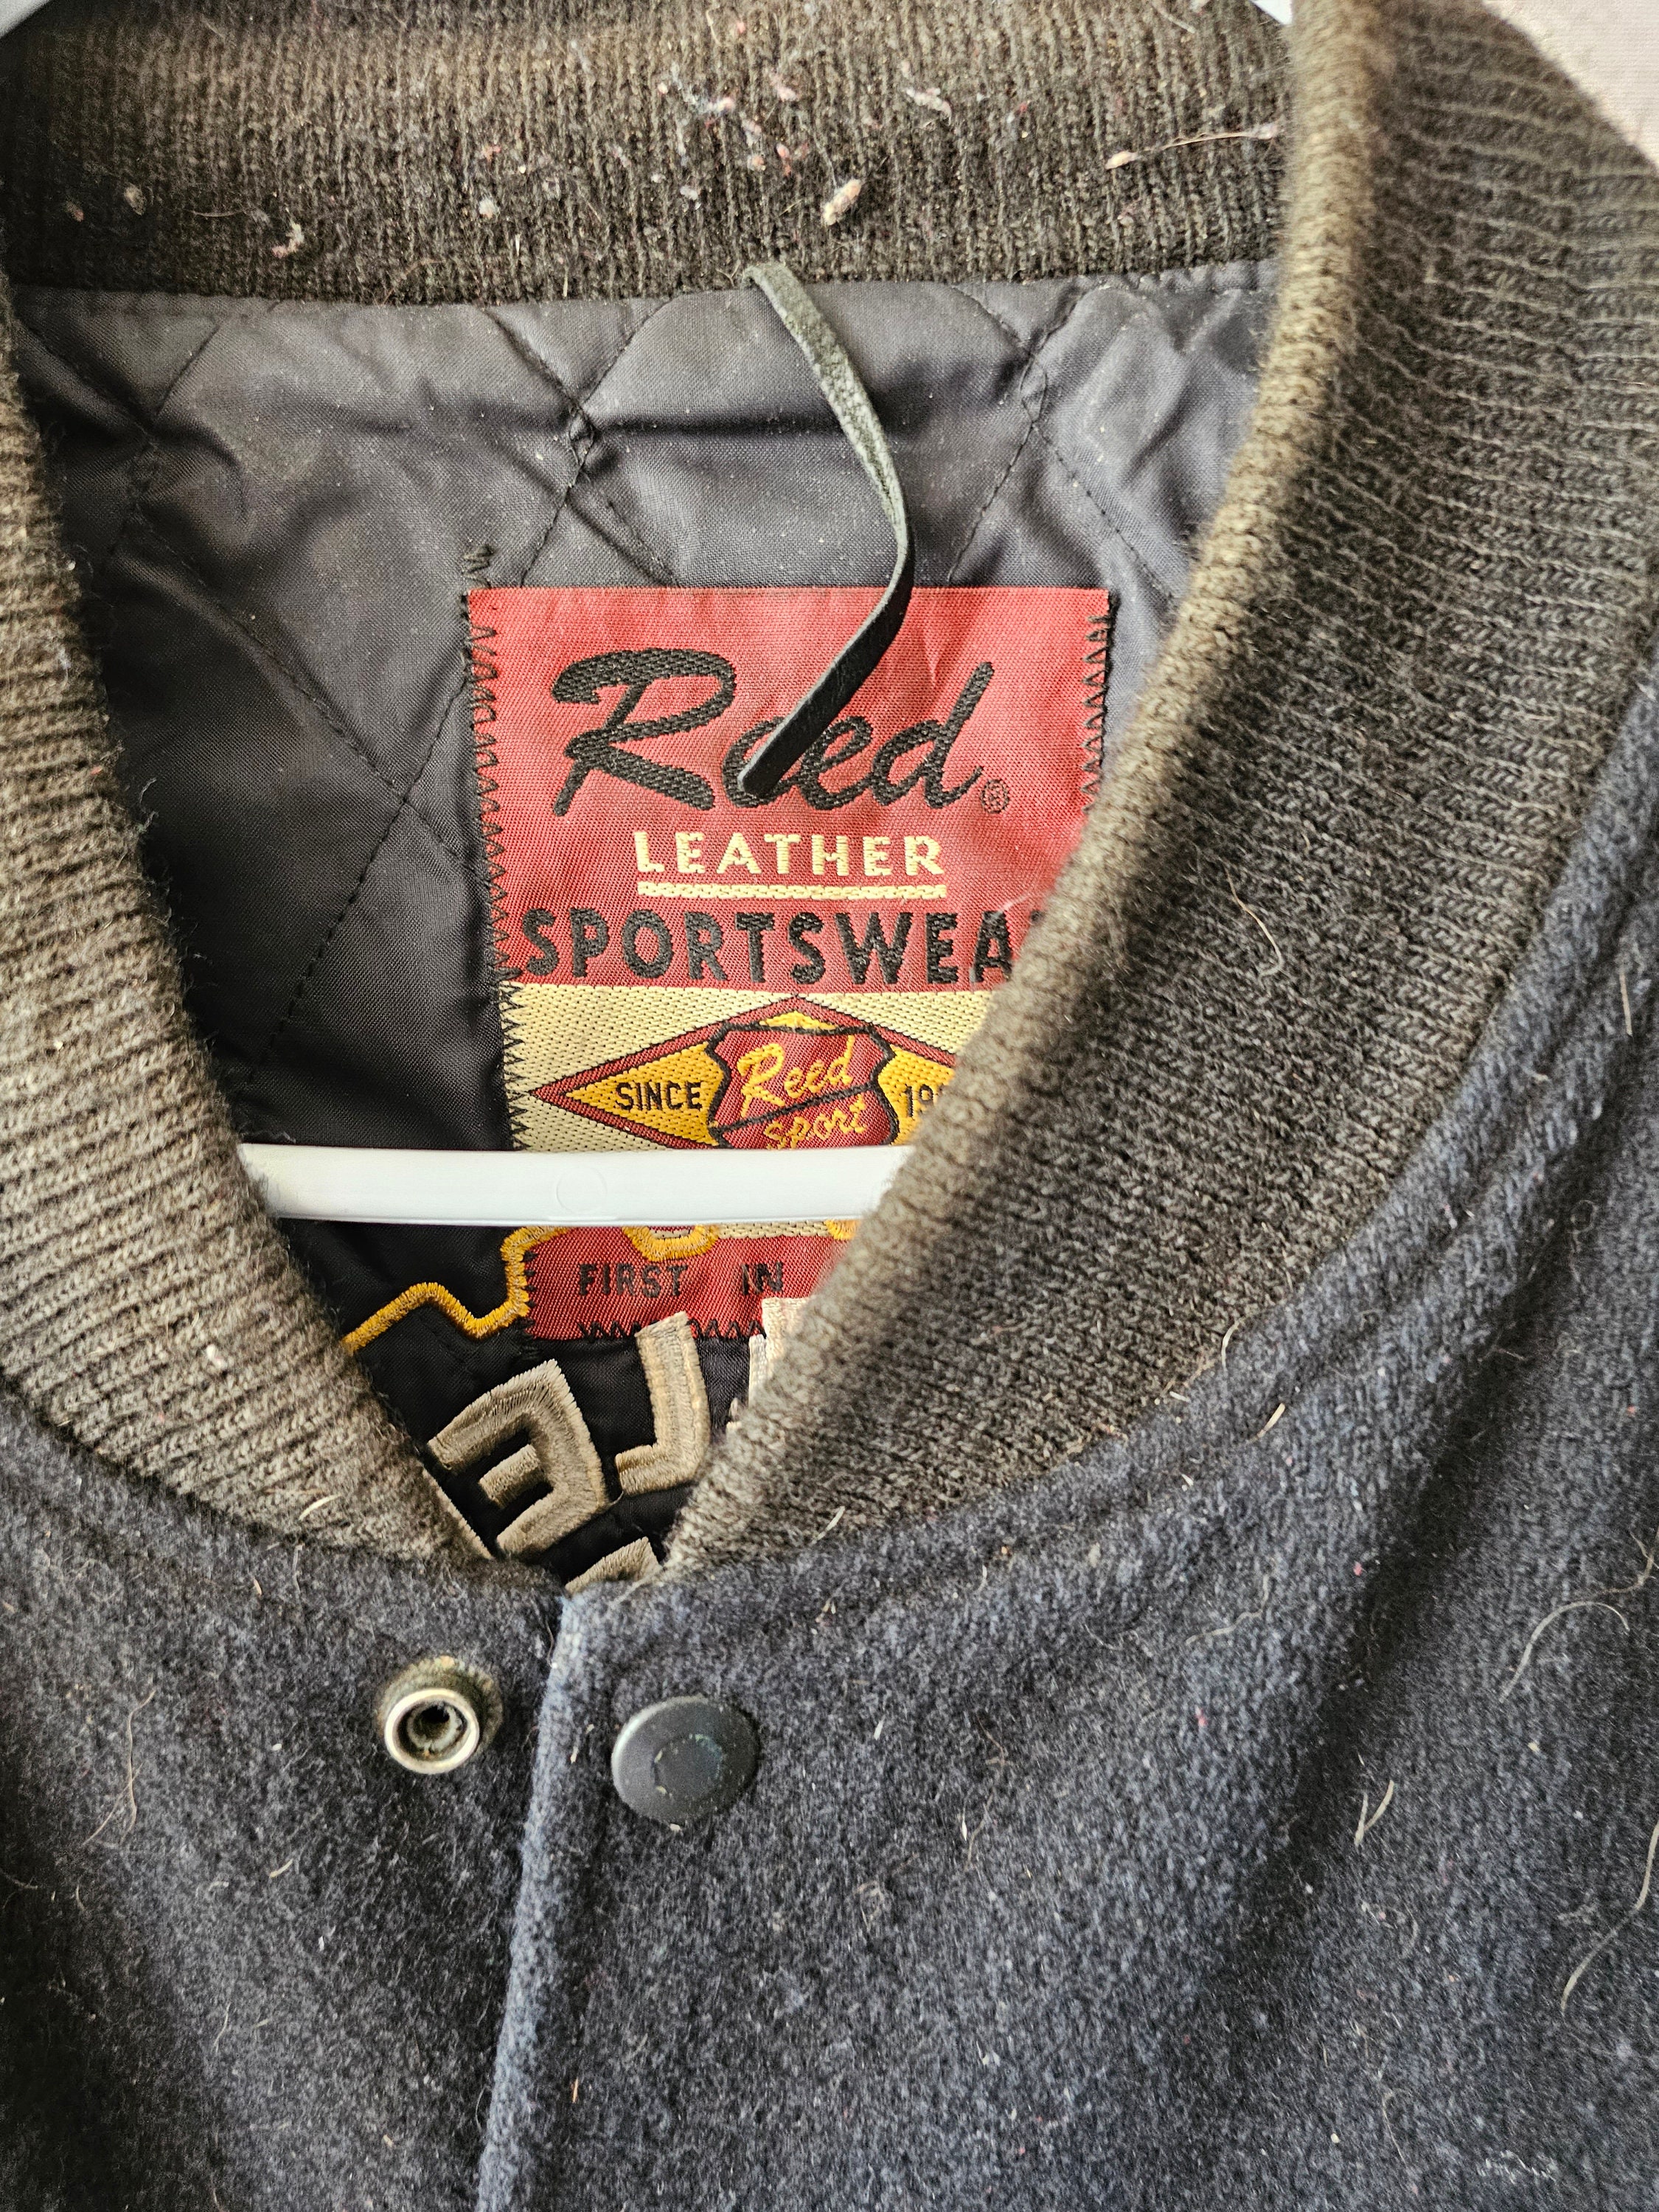 Appliquéd Wool-Blend Felt and Leather Varsity Jacket